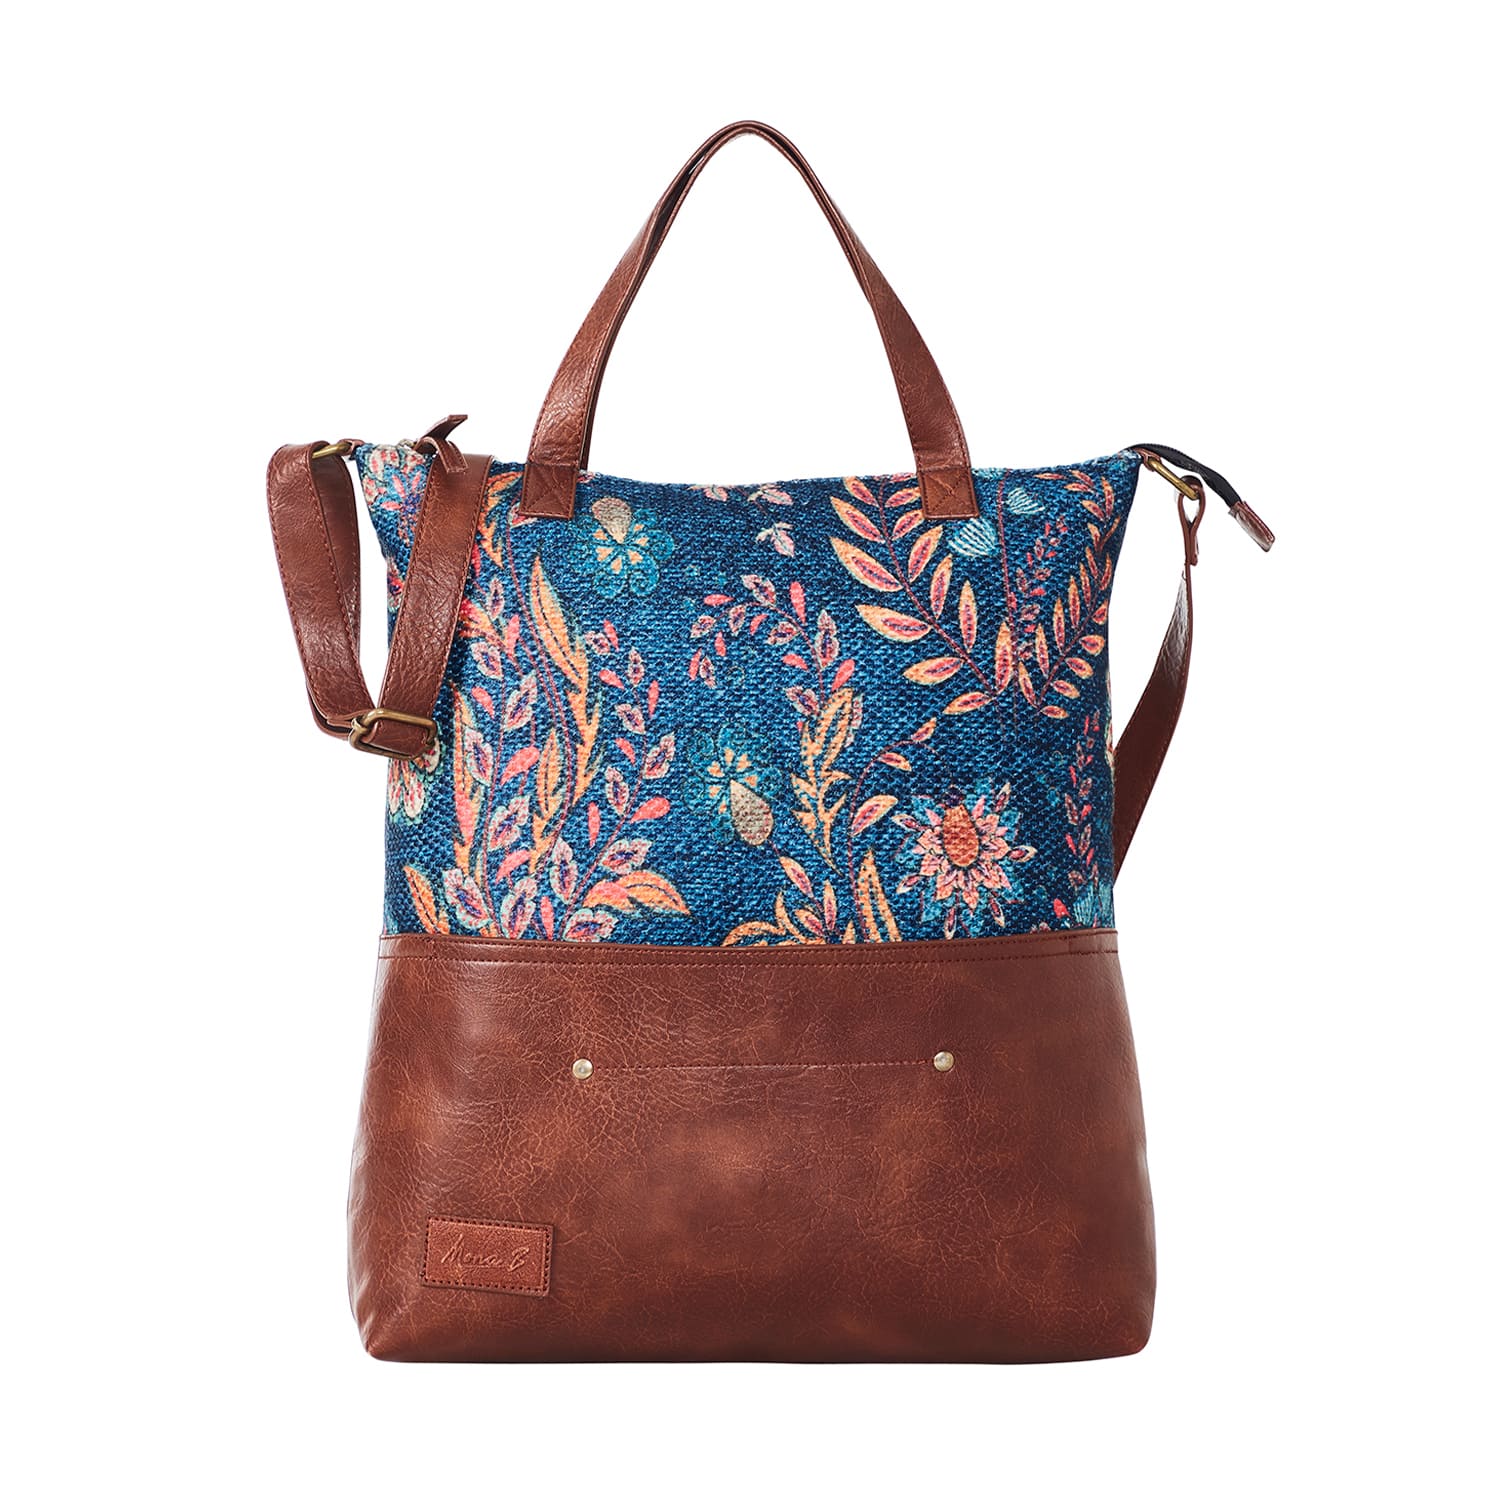 Mona B Women's Amelia Handbag (Multicolour) - Handbag by Mona-B - Backpack, Flash Sale, Flat40, Sale, Shop1999, Shop2999, Shop3999